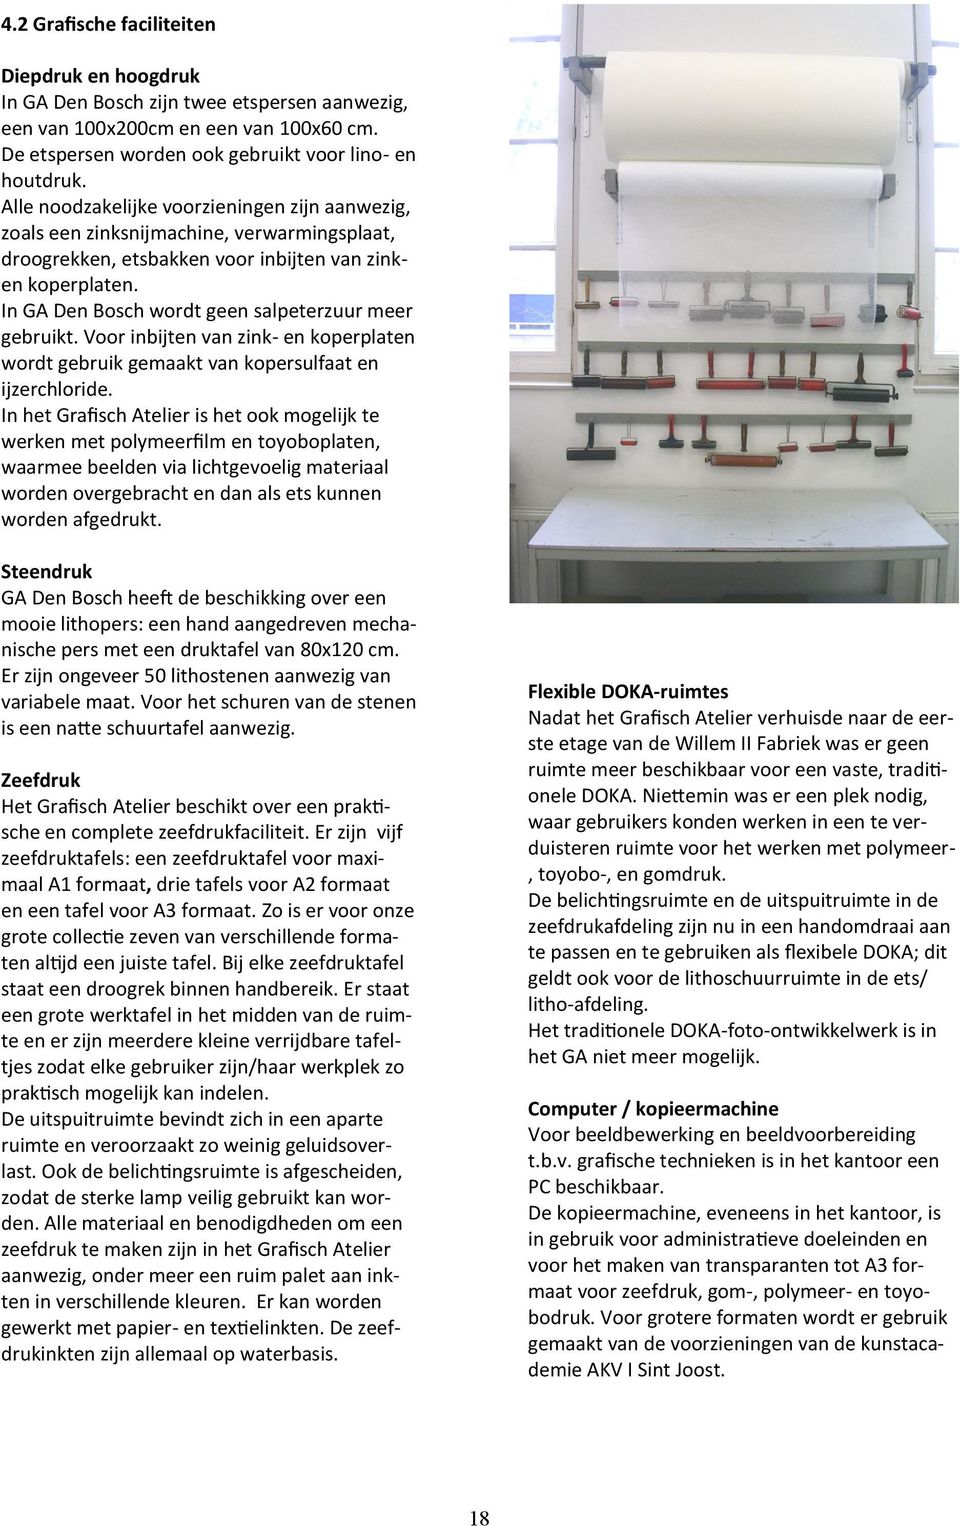 In GA Den Bosch wordt geen salpeterzuur meer gebruikt. Voor inbijten van zink- en koperplaten wordt gebruik gemaakt van kopersulfaat en ijzerchloride.